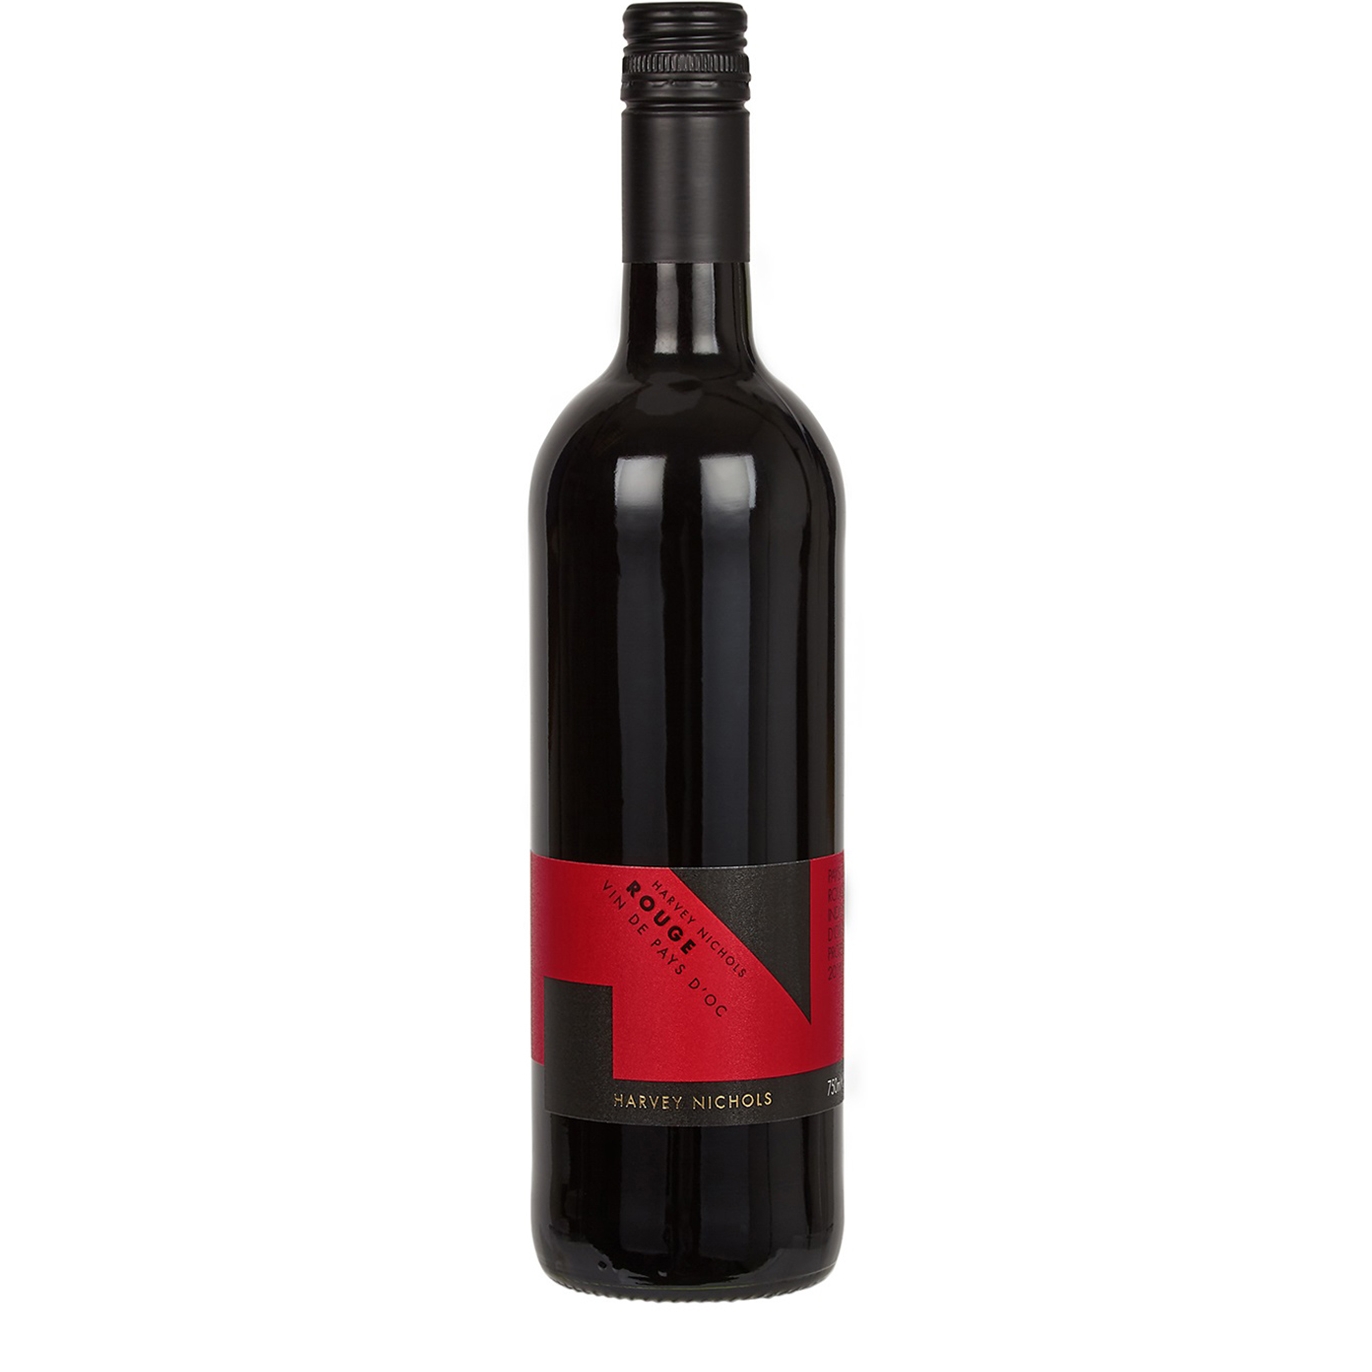 Harvey Nichols Rouge Vin De Pays D'Oc 2020 Red Wine